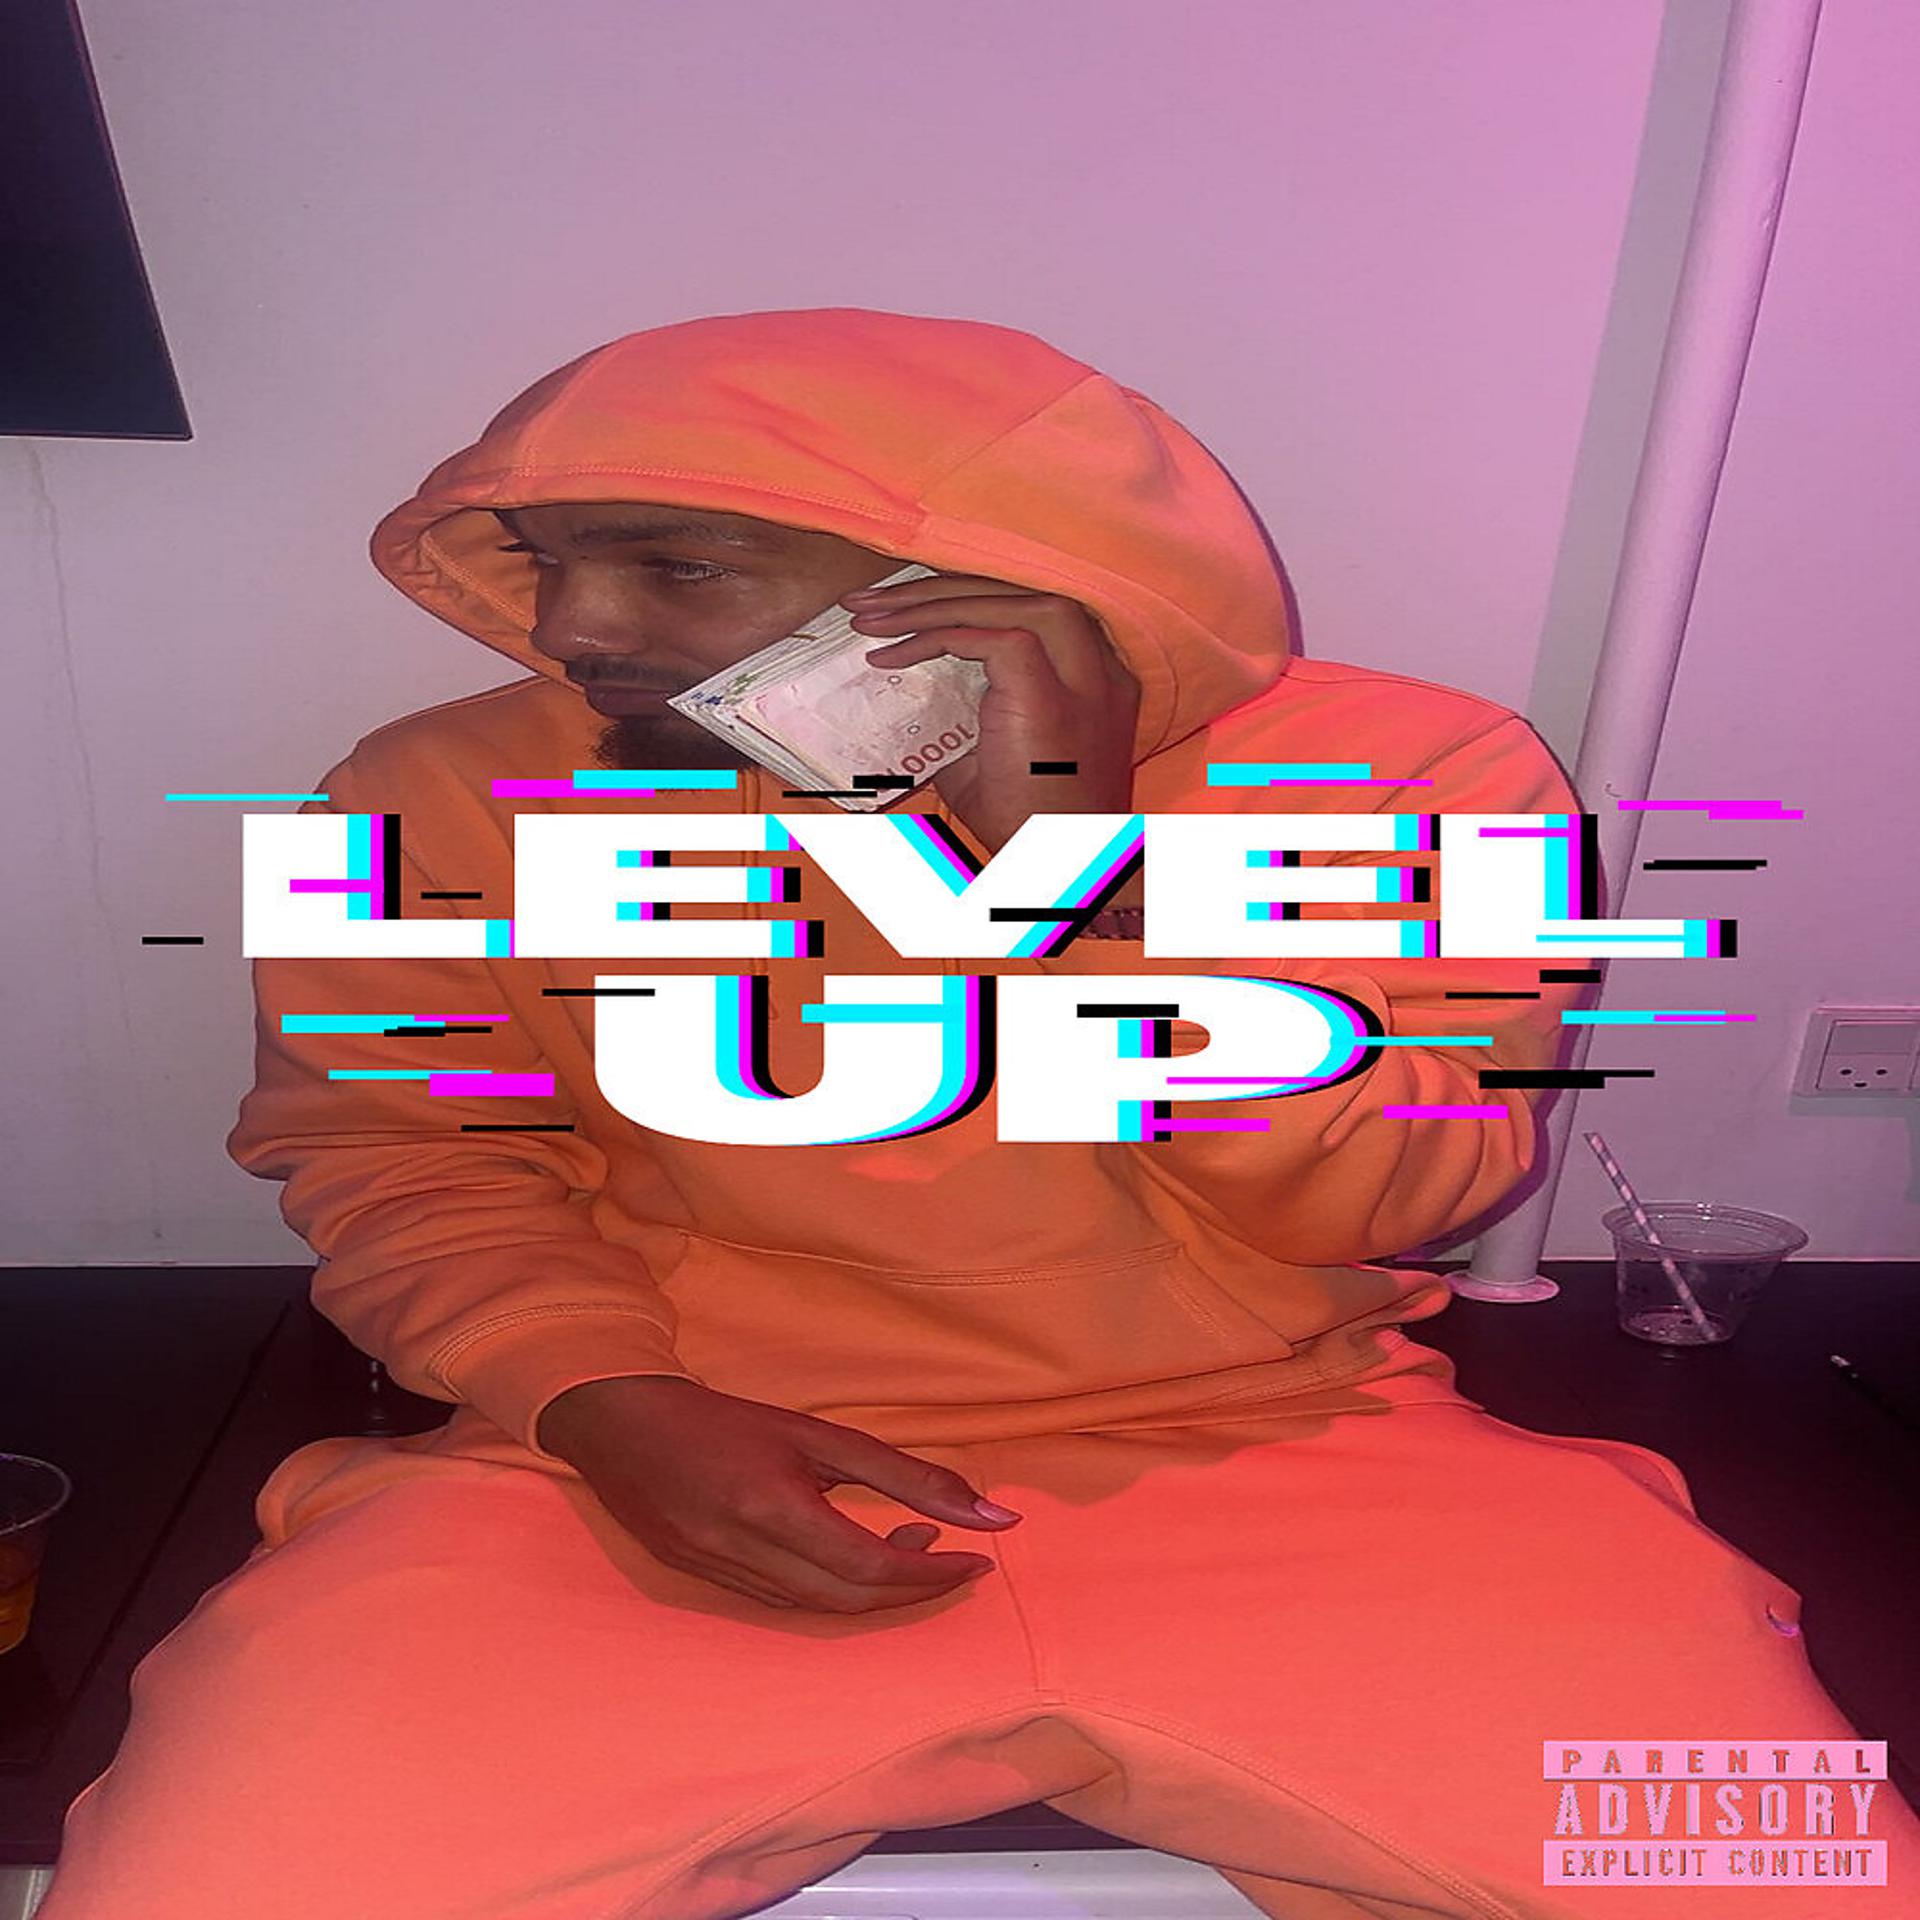 Постер альбома Level up